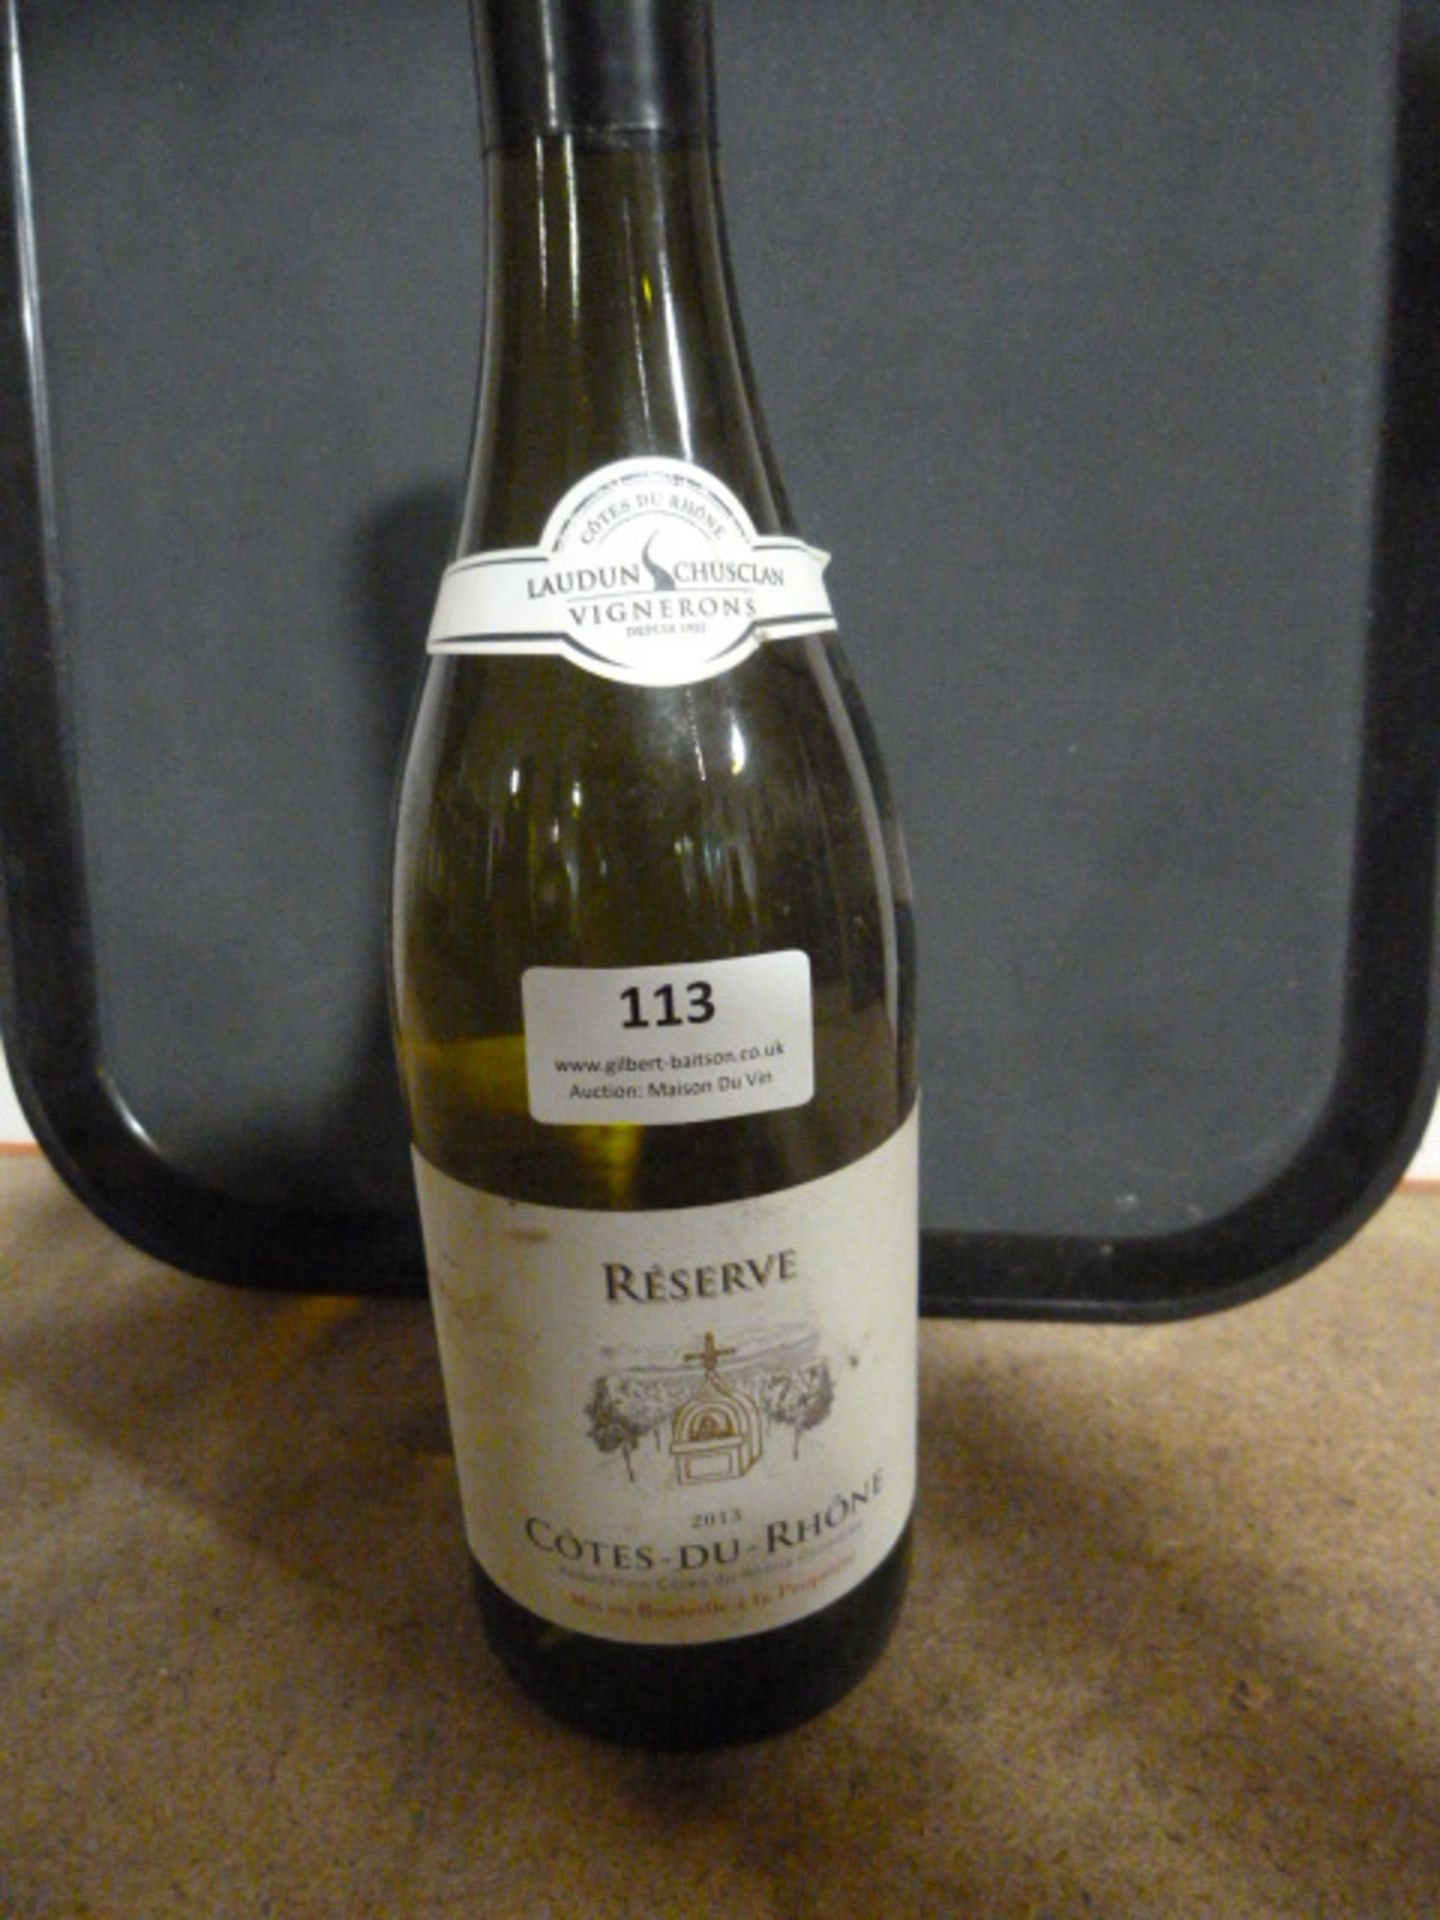 *75cl Bottle of 2013 Laudun Cotes Du Rhone